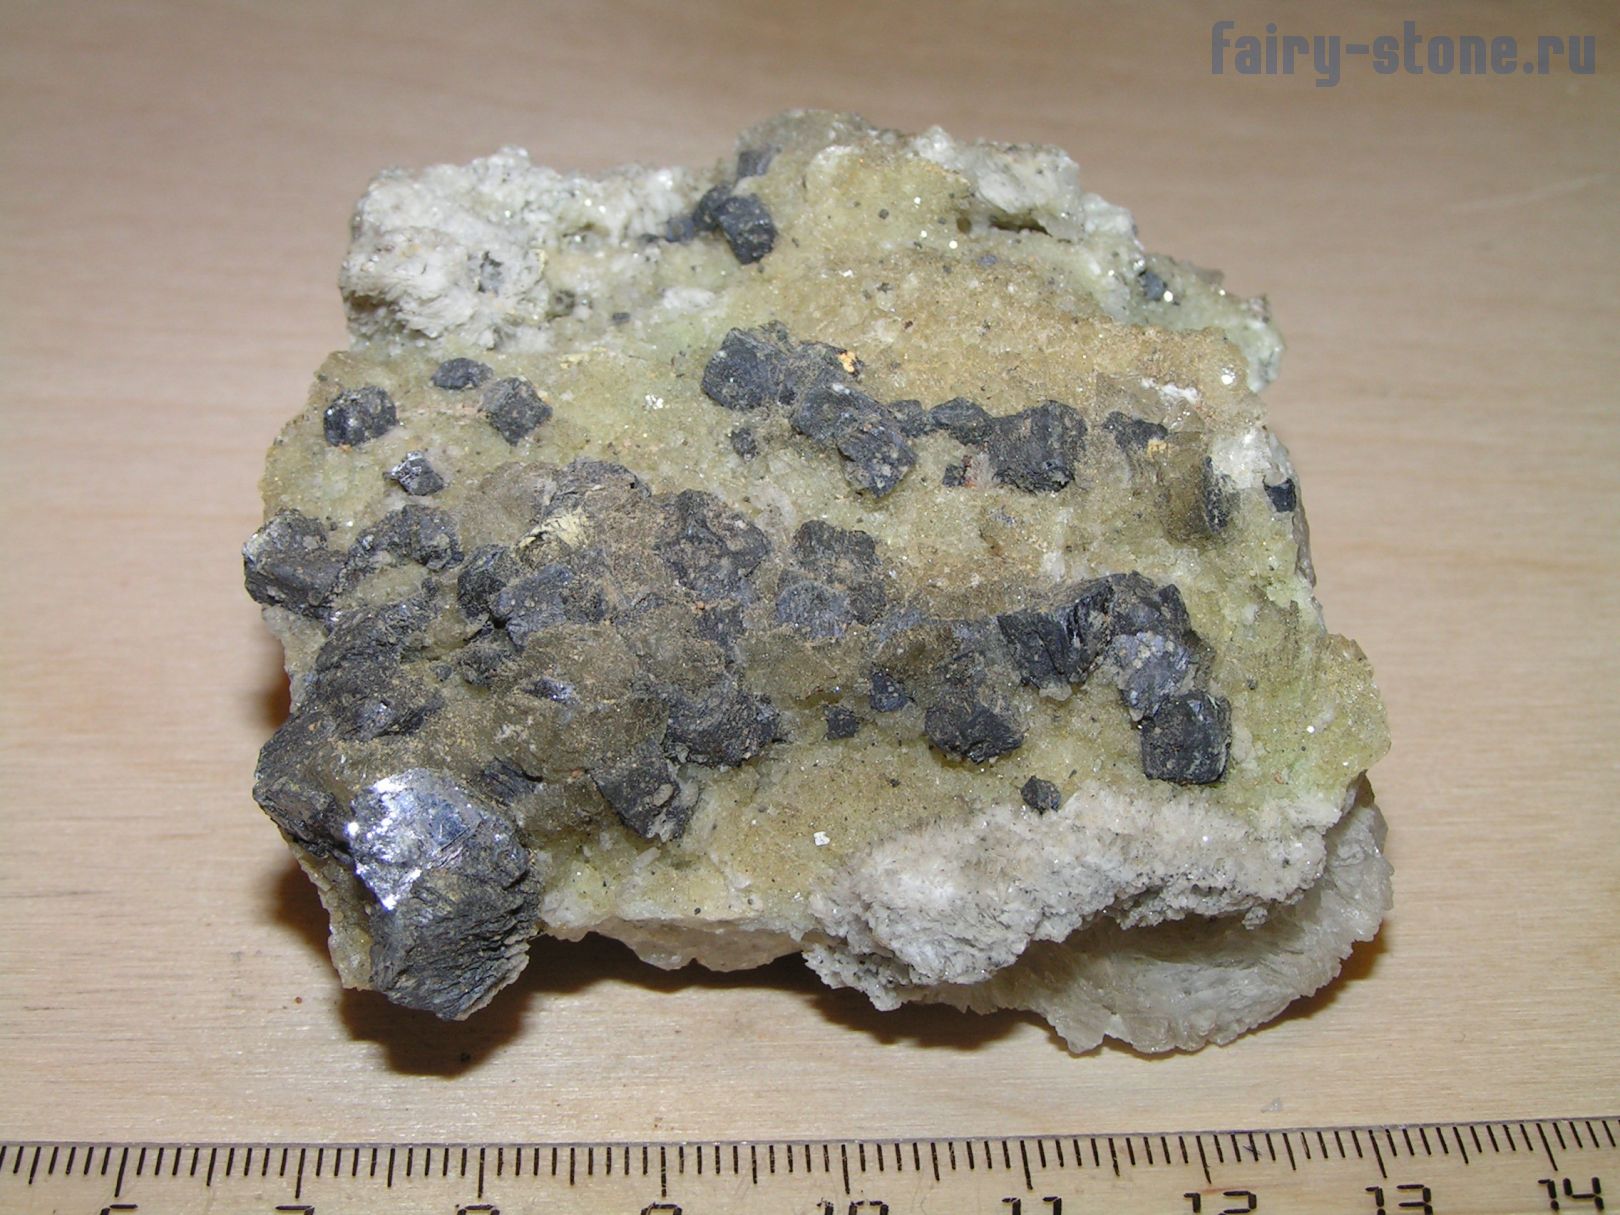 Цепочка производства свинца из минерала галенита